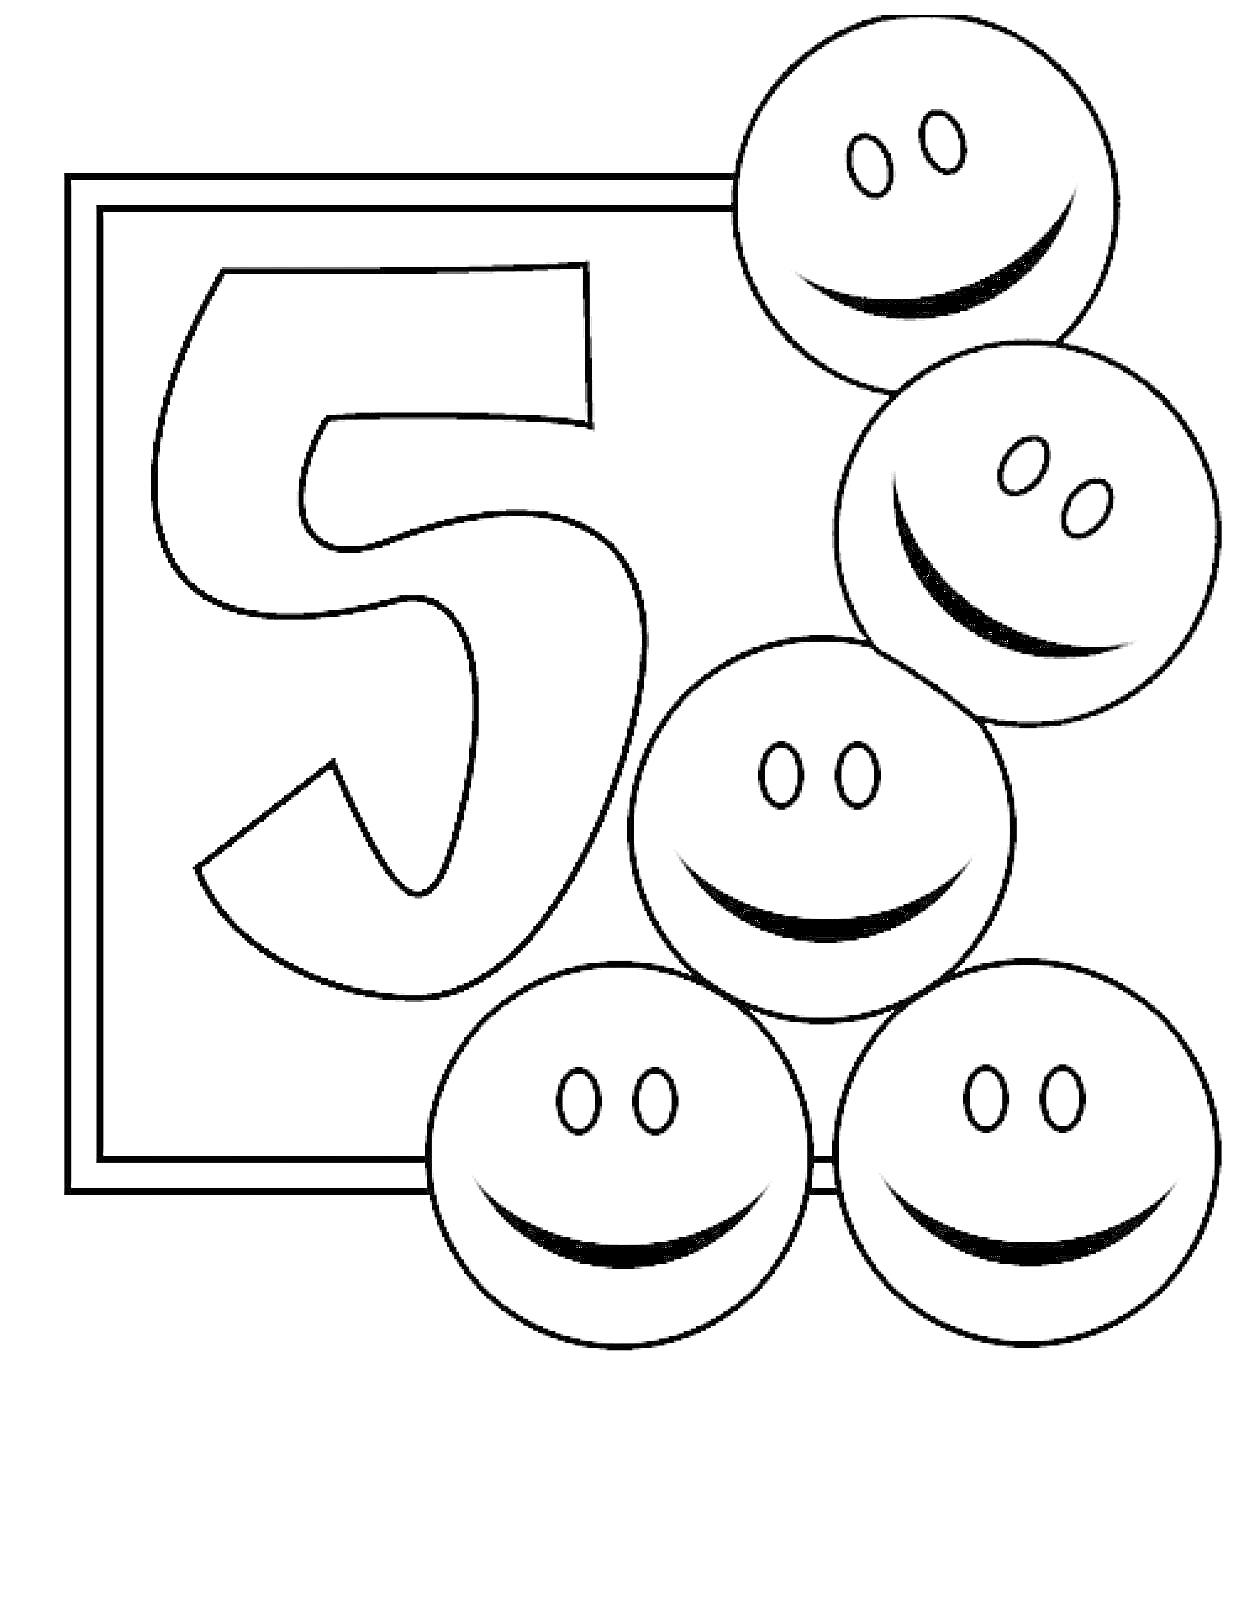 Раскраска Цифра 5 с пятью смайликами в квадратной рамке